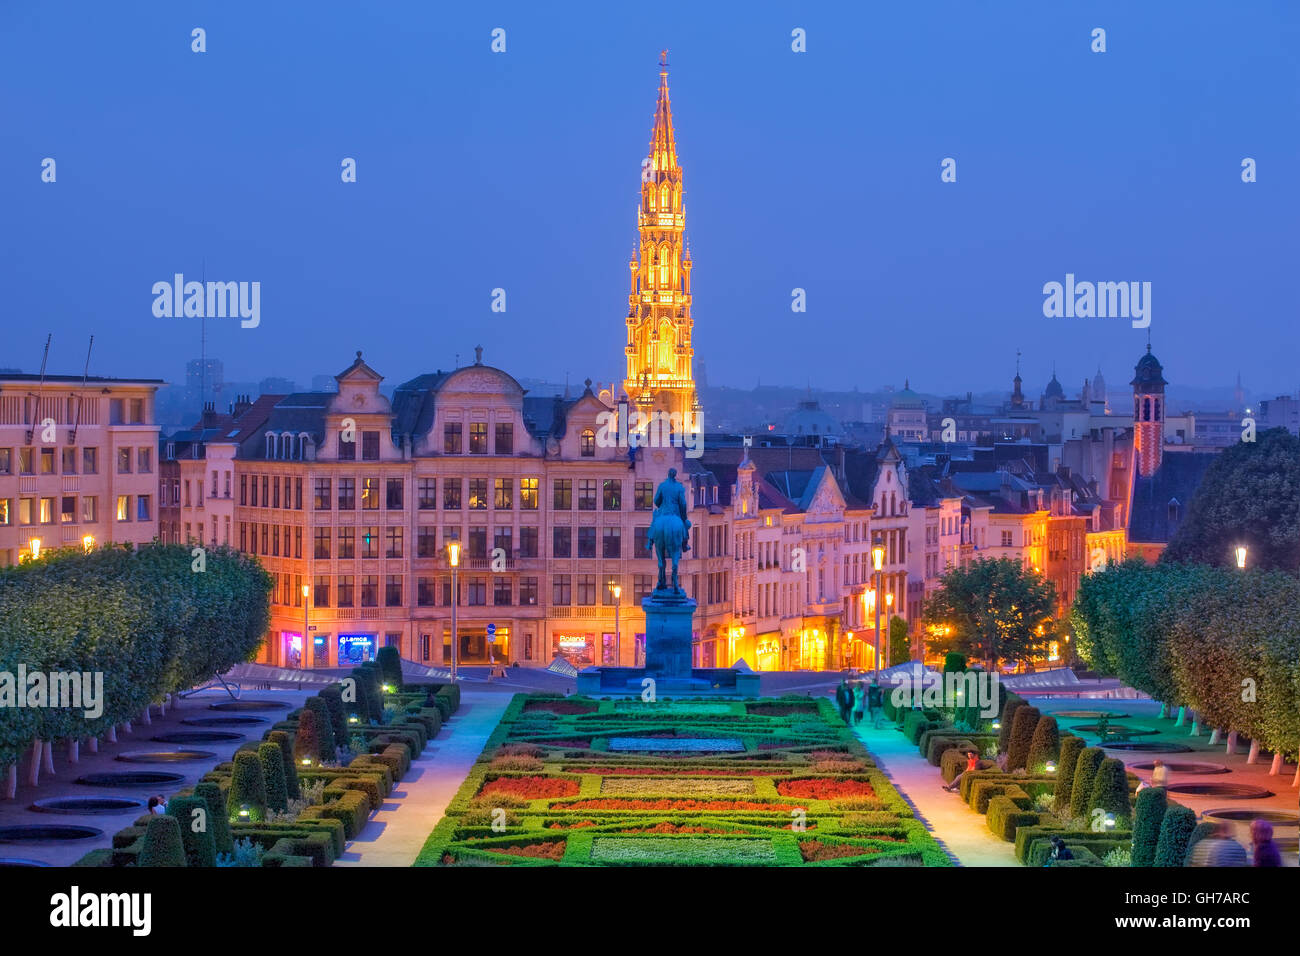 Albertine square in Brussels, Belgium Stock Photo